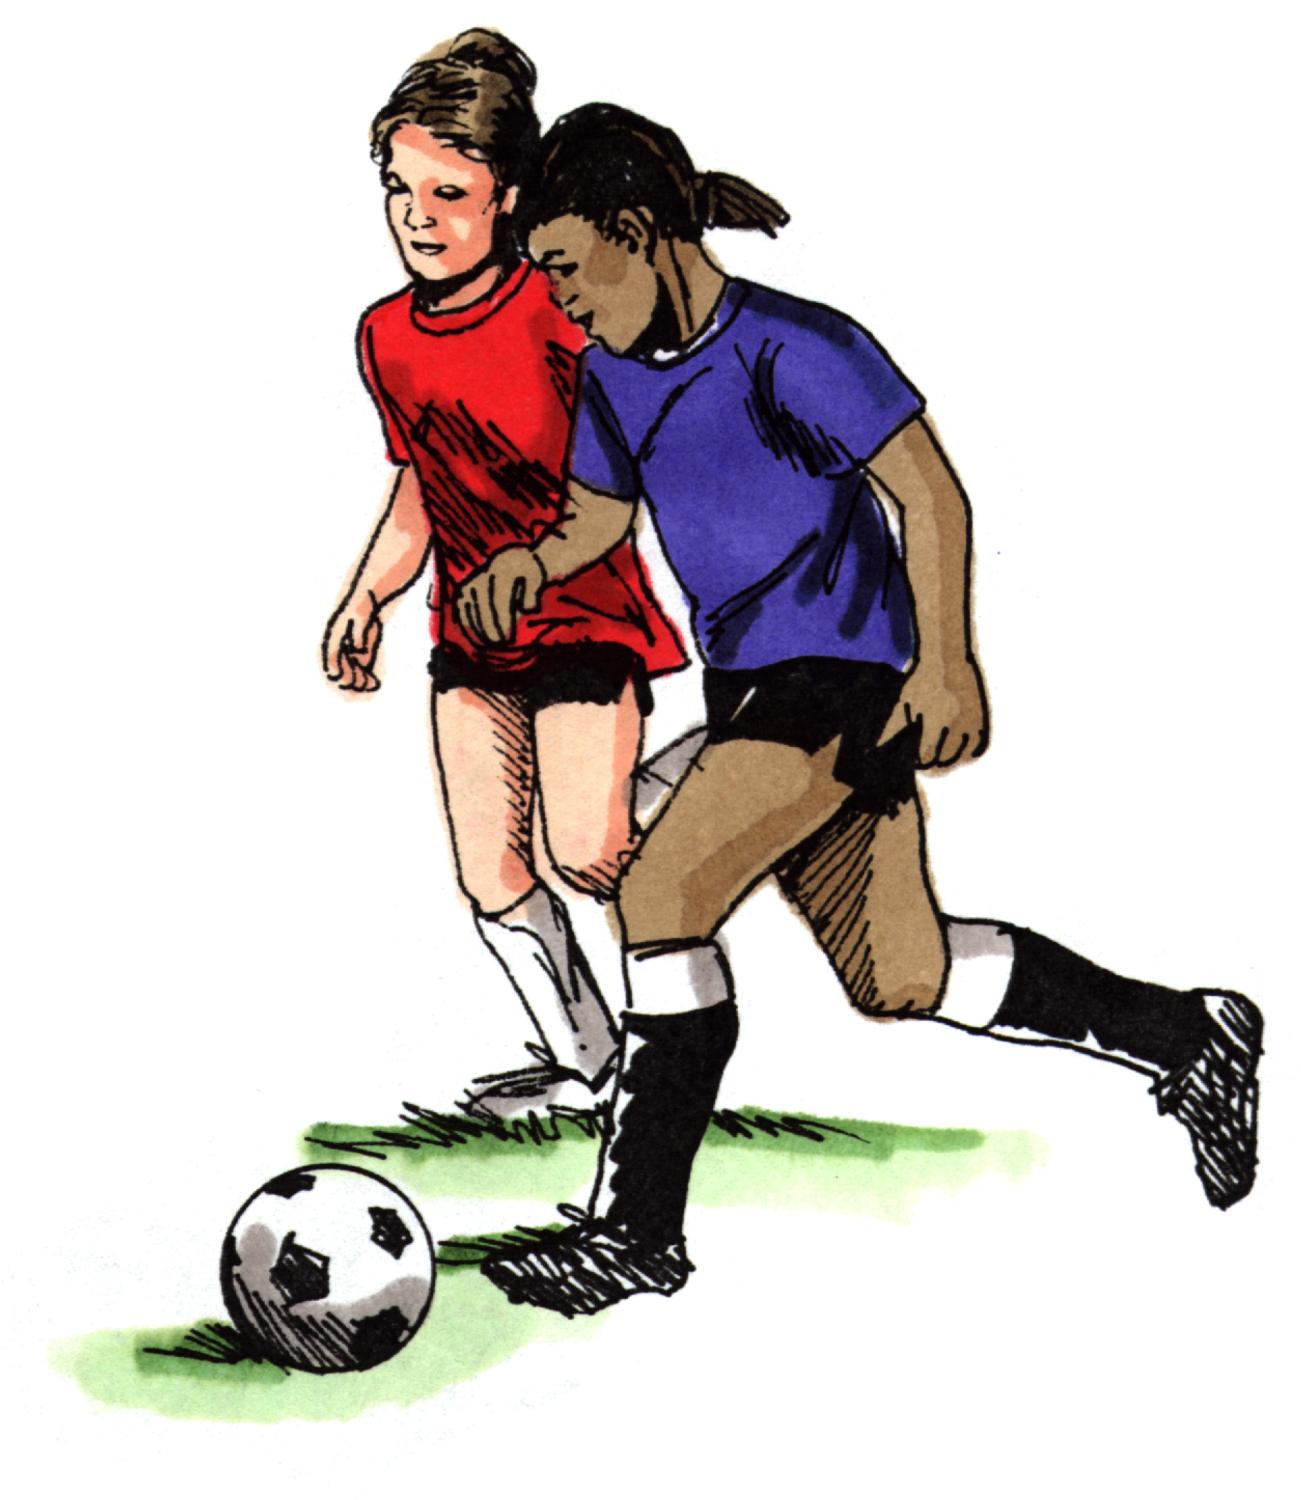 Youth Soccer Clinics